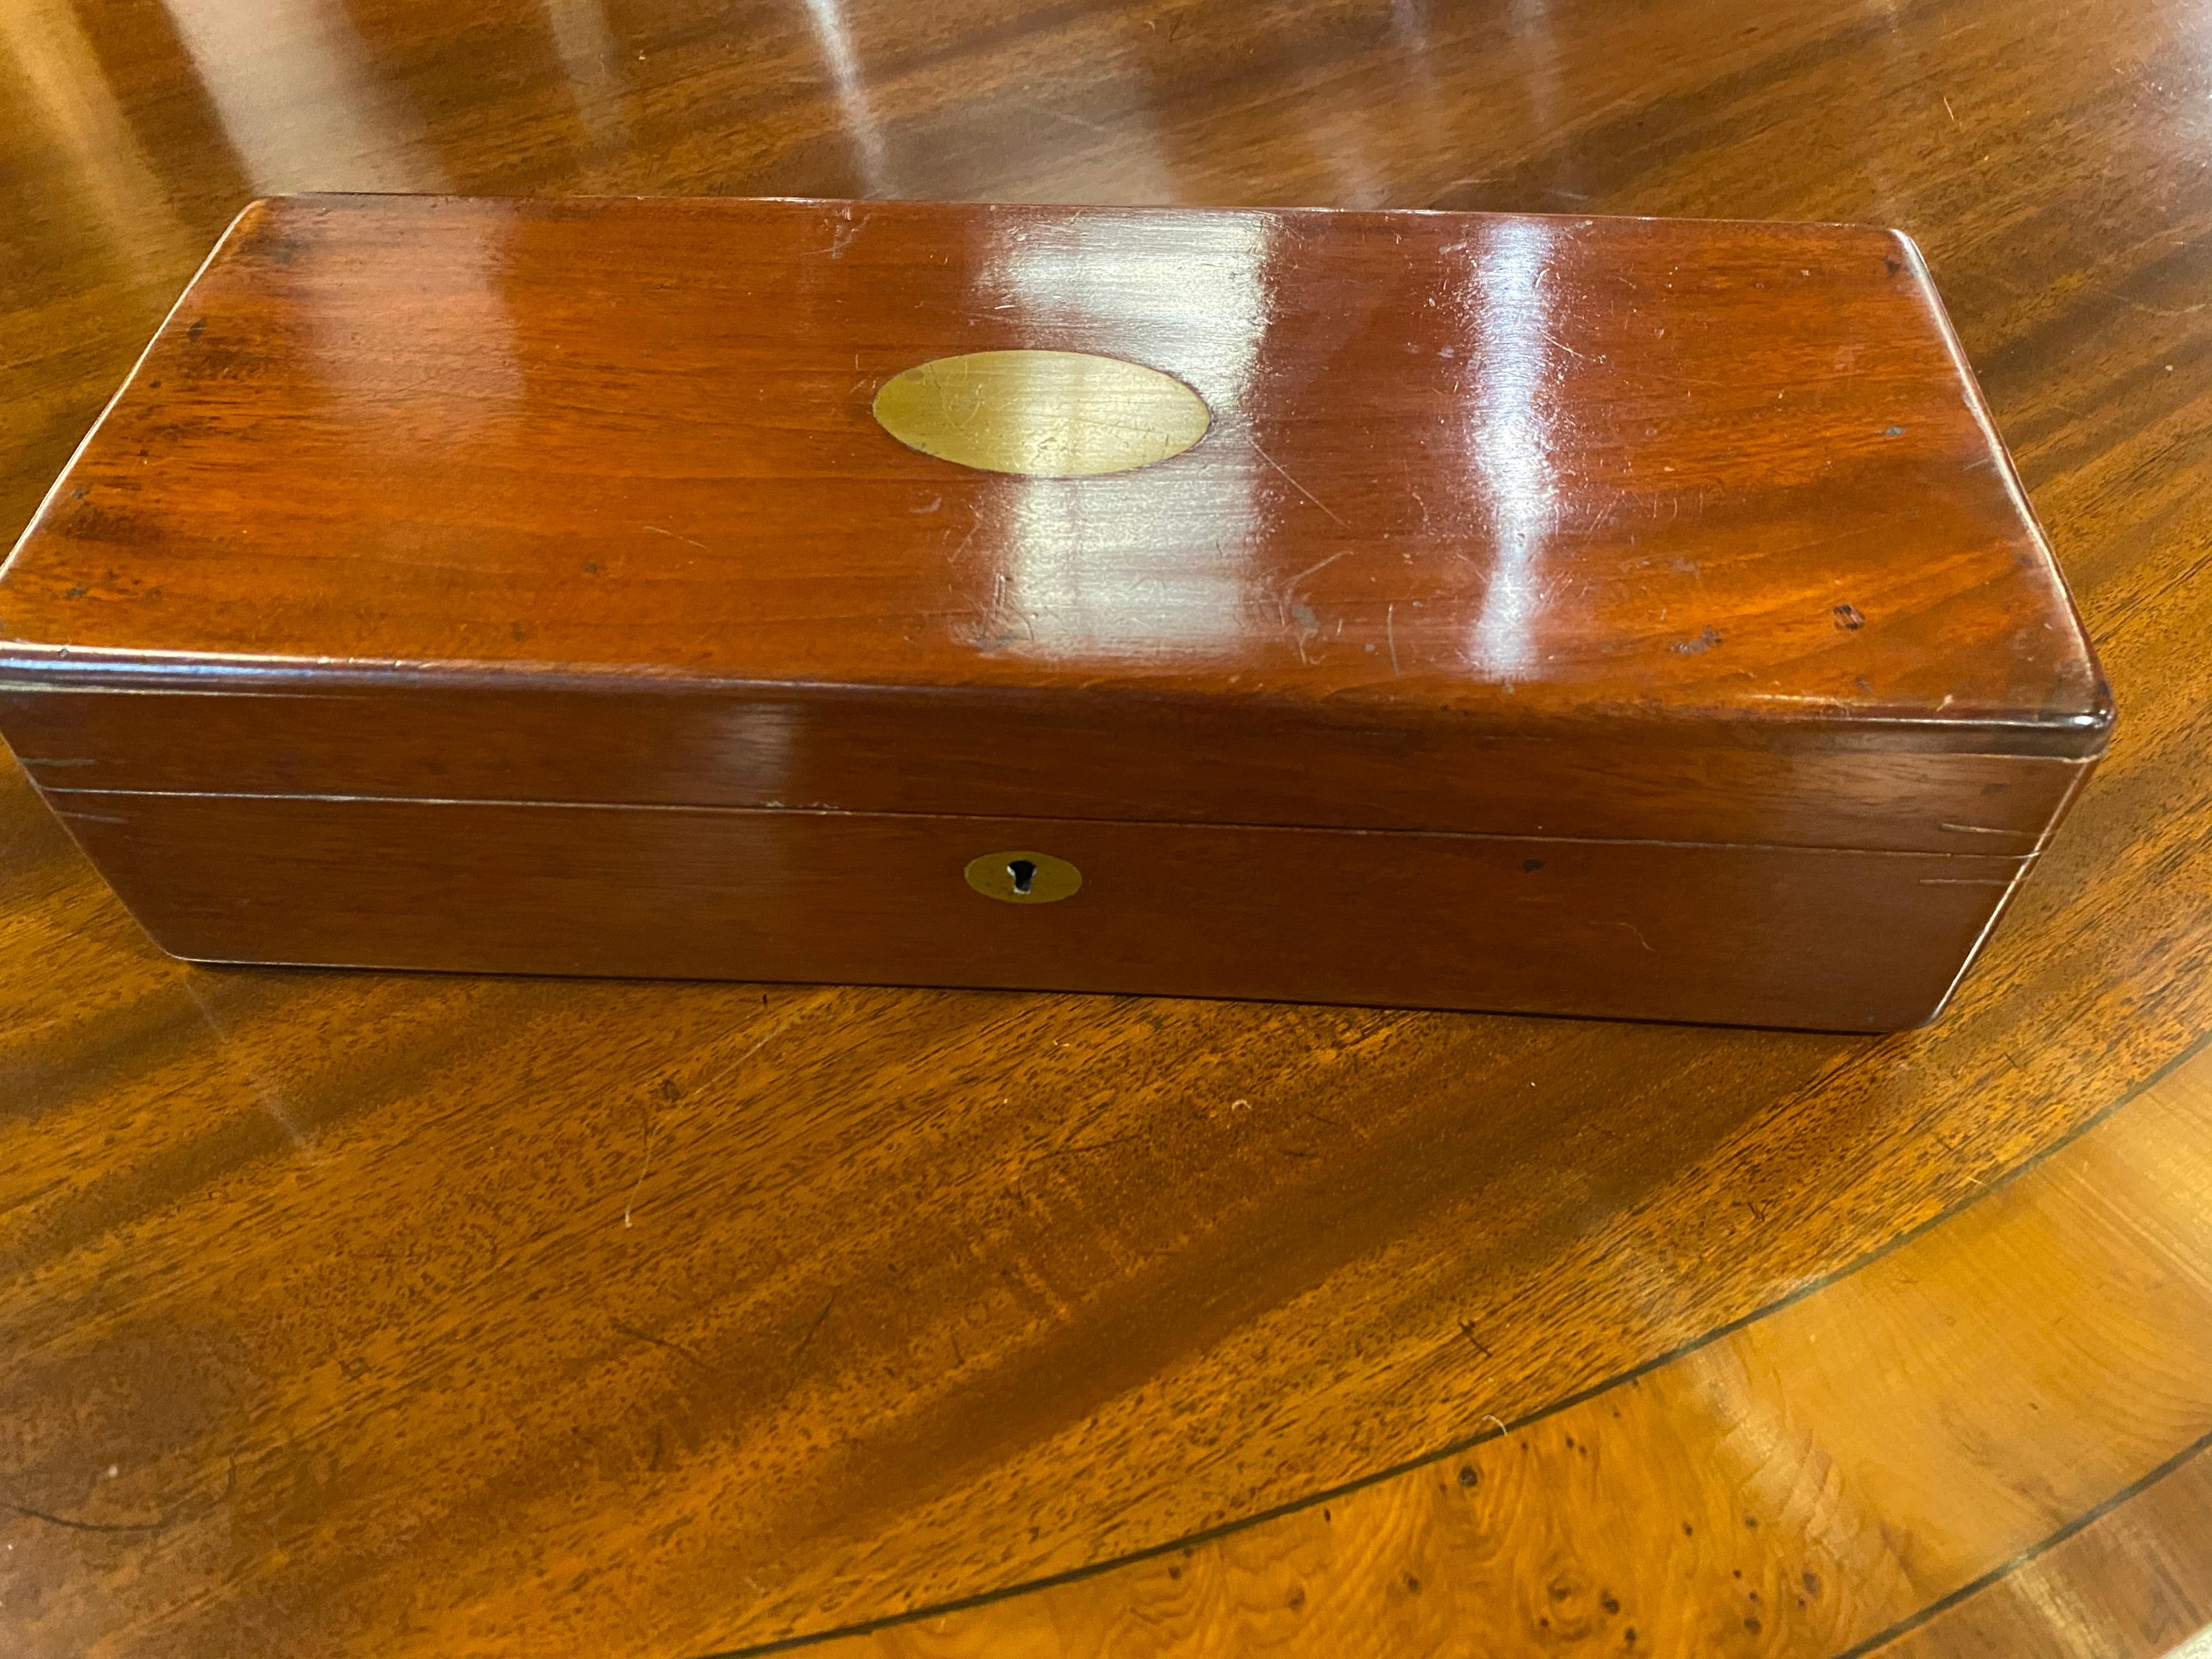 Boîte rectangulaire du XIXe siècle avec une plaque ovale en laiton sans gravure.
L'extérieur a été repoli au fil du temps. Il a une belle patine chaude. L'intérieur a été laissé tel qu'il a été trouvé. Ferrures d'origine en laiton, la clé est